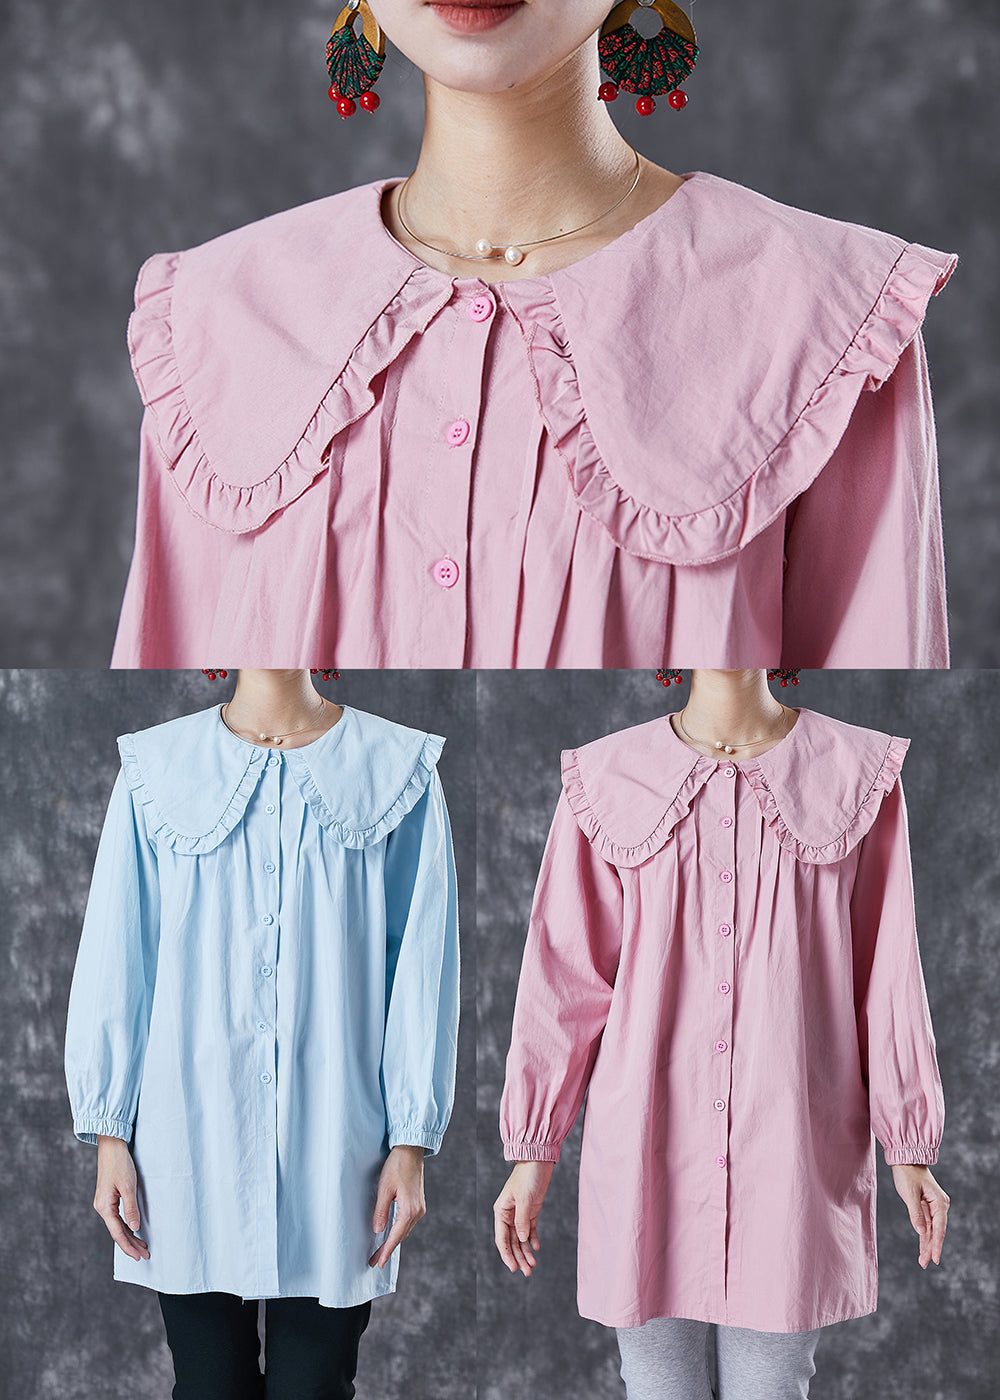 Classy Pink Peter Pan Collar Cotton Shirt Top Spring